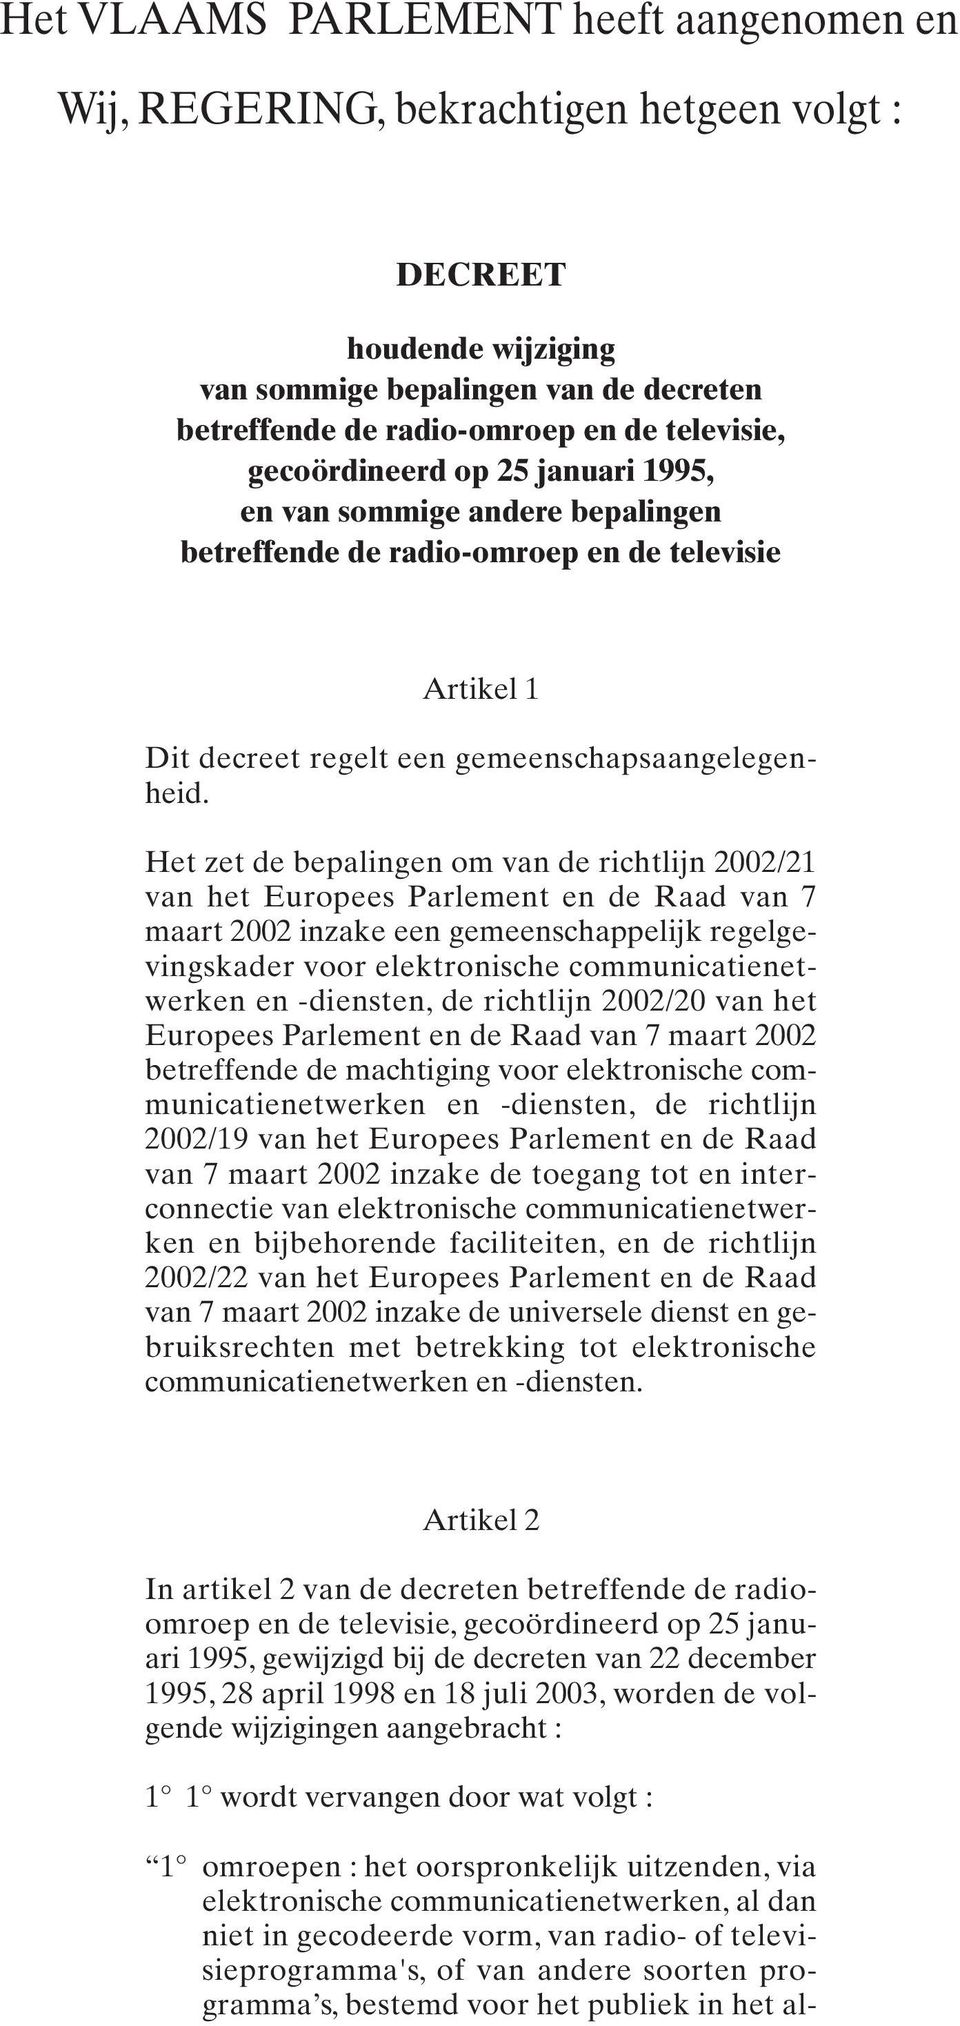 Het zet de bepalingen om van de richtlijn 2002/21 van het Europees Parlement en de Raad van 7 maart 2002 inzake een gemeenschappelijk regelgevingskader voor elektronische communicatienetwerken en